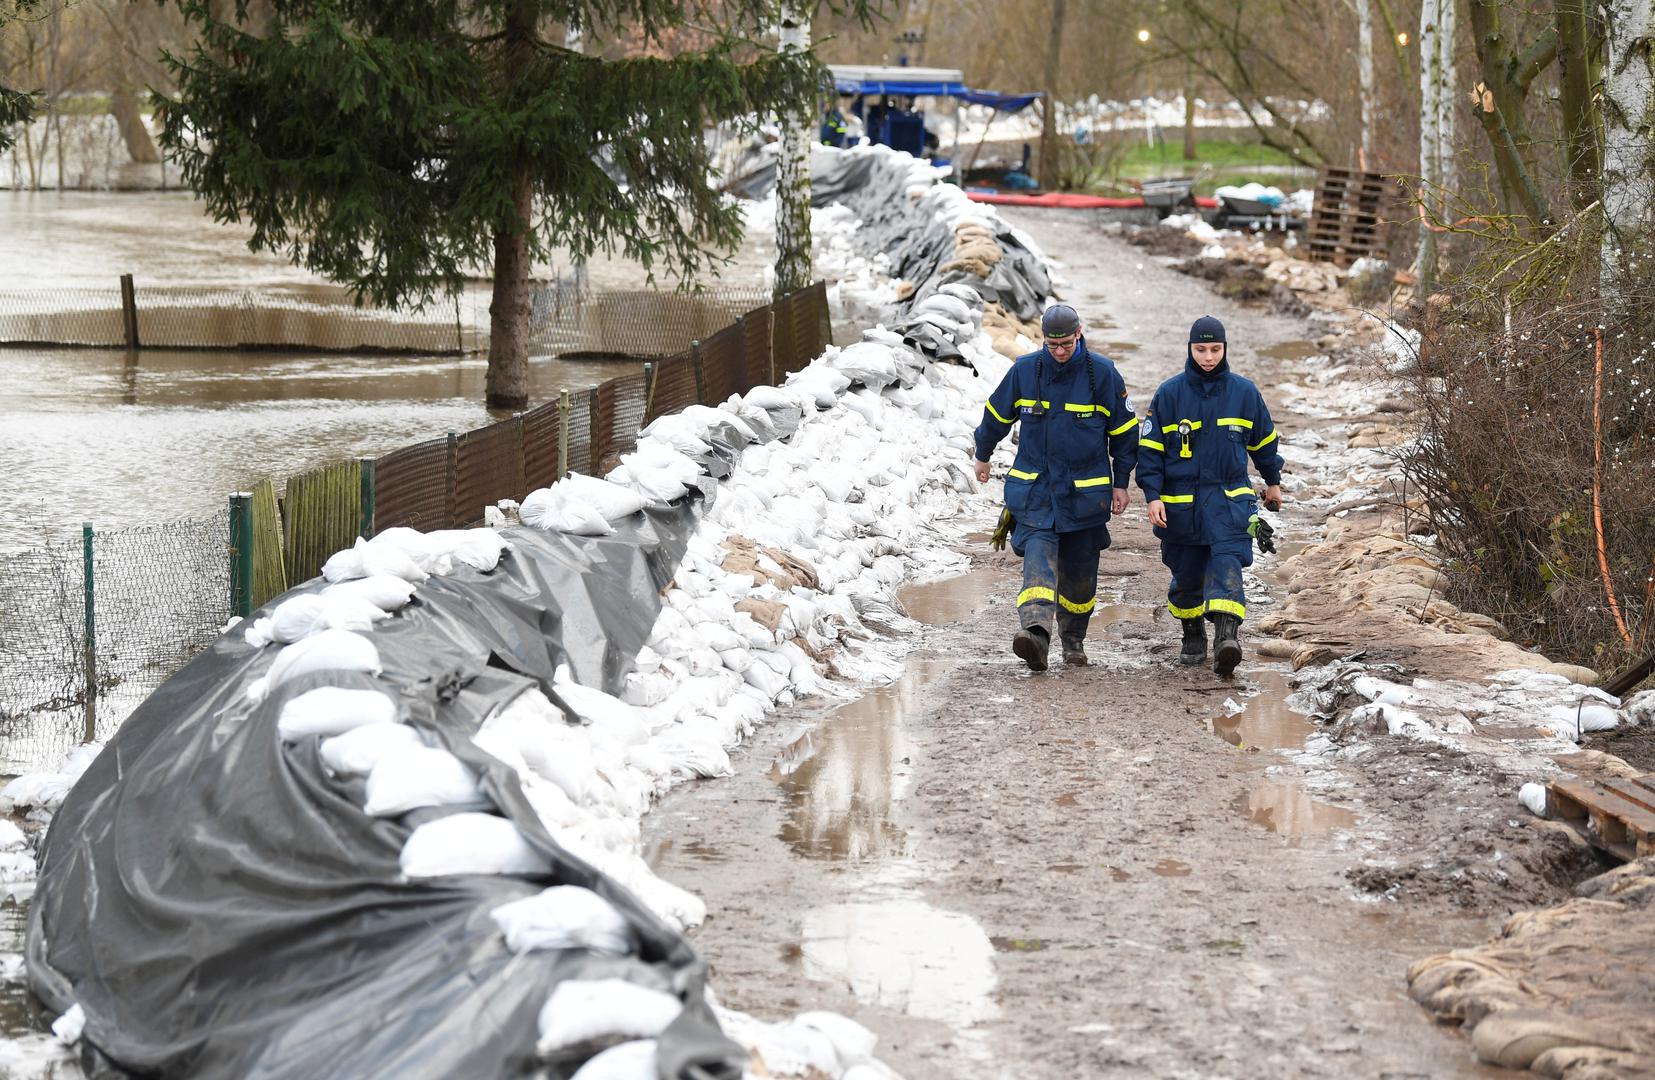 Niske temperature popraćene olujnim vjetrovima i snijegom izazvale su probleme u nordijskog regiji te su tisuće ljudi bez električne energije. Njemačka se suočila s obilnim kišama zbog kojih je došlo do poplava u regijama koje su već bile poplavljene posljednja dva tjedna.